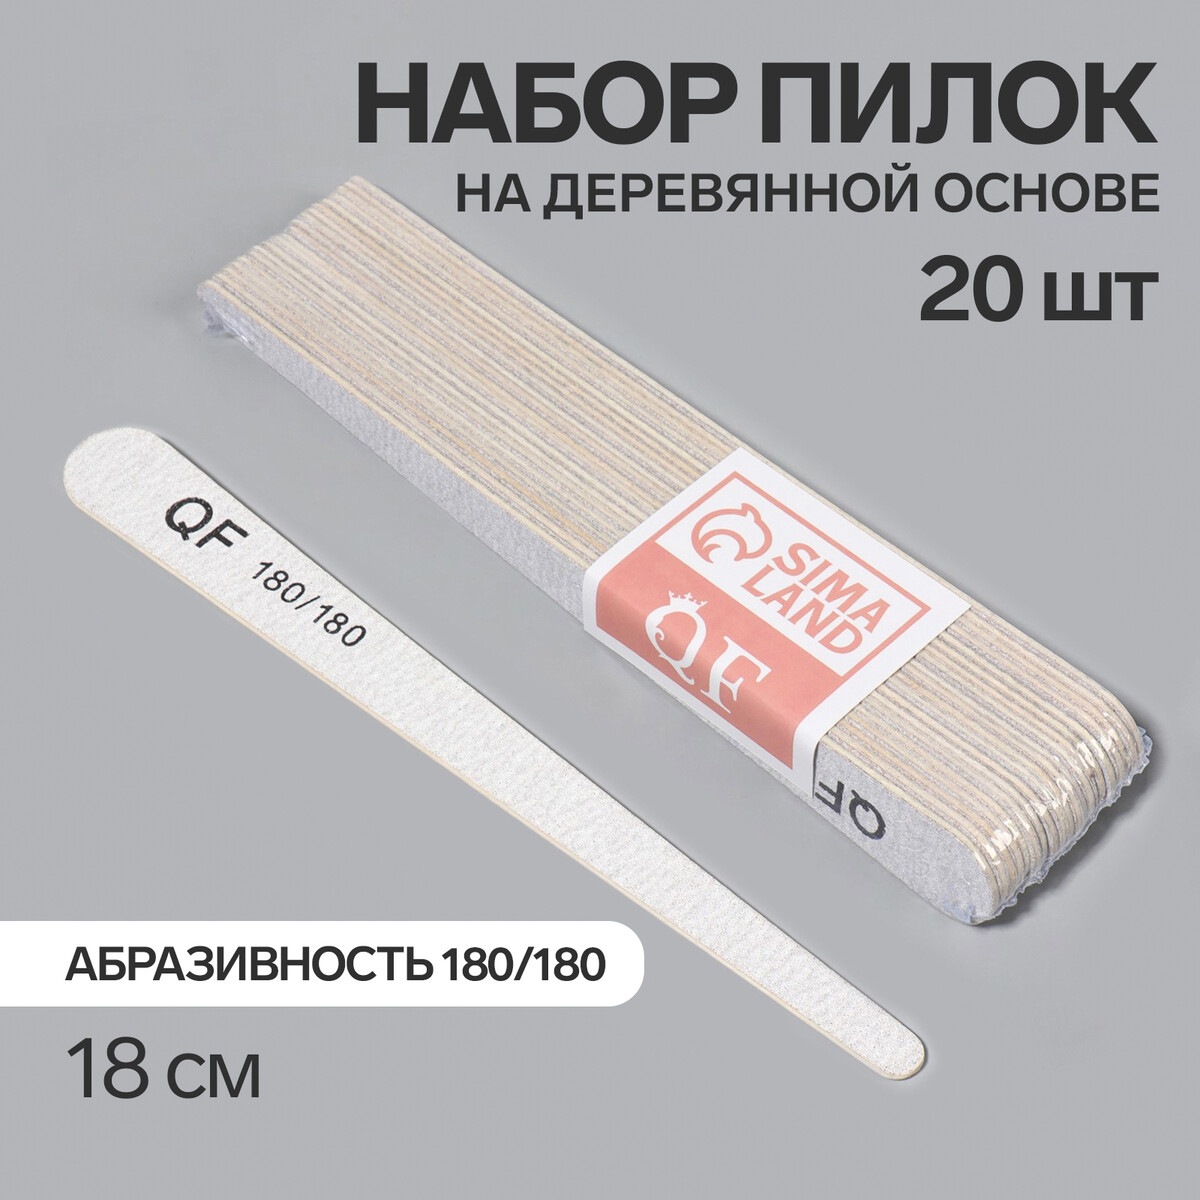 Пилка-наждак, набор 20 шт, деревянная основа, абразивность 180/180, 18 см, цвет серый палка основа для макраме деревянная без покрытия d 1 × 50 см